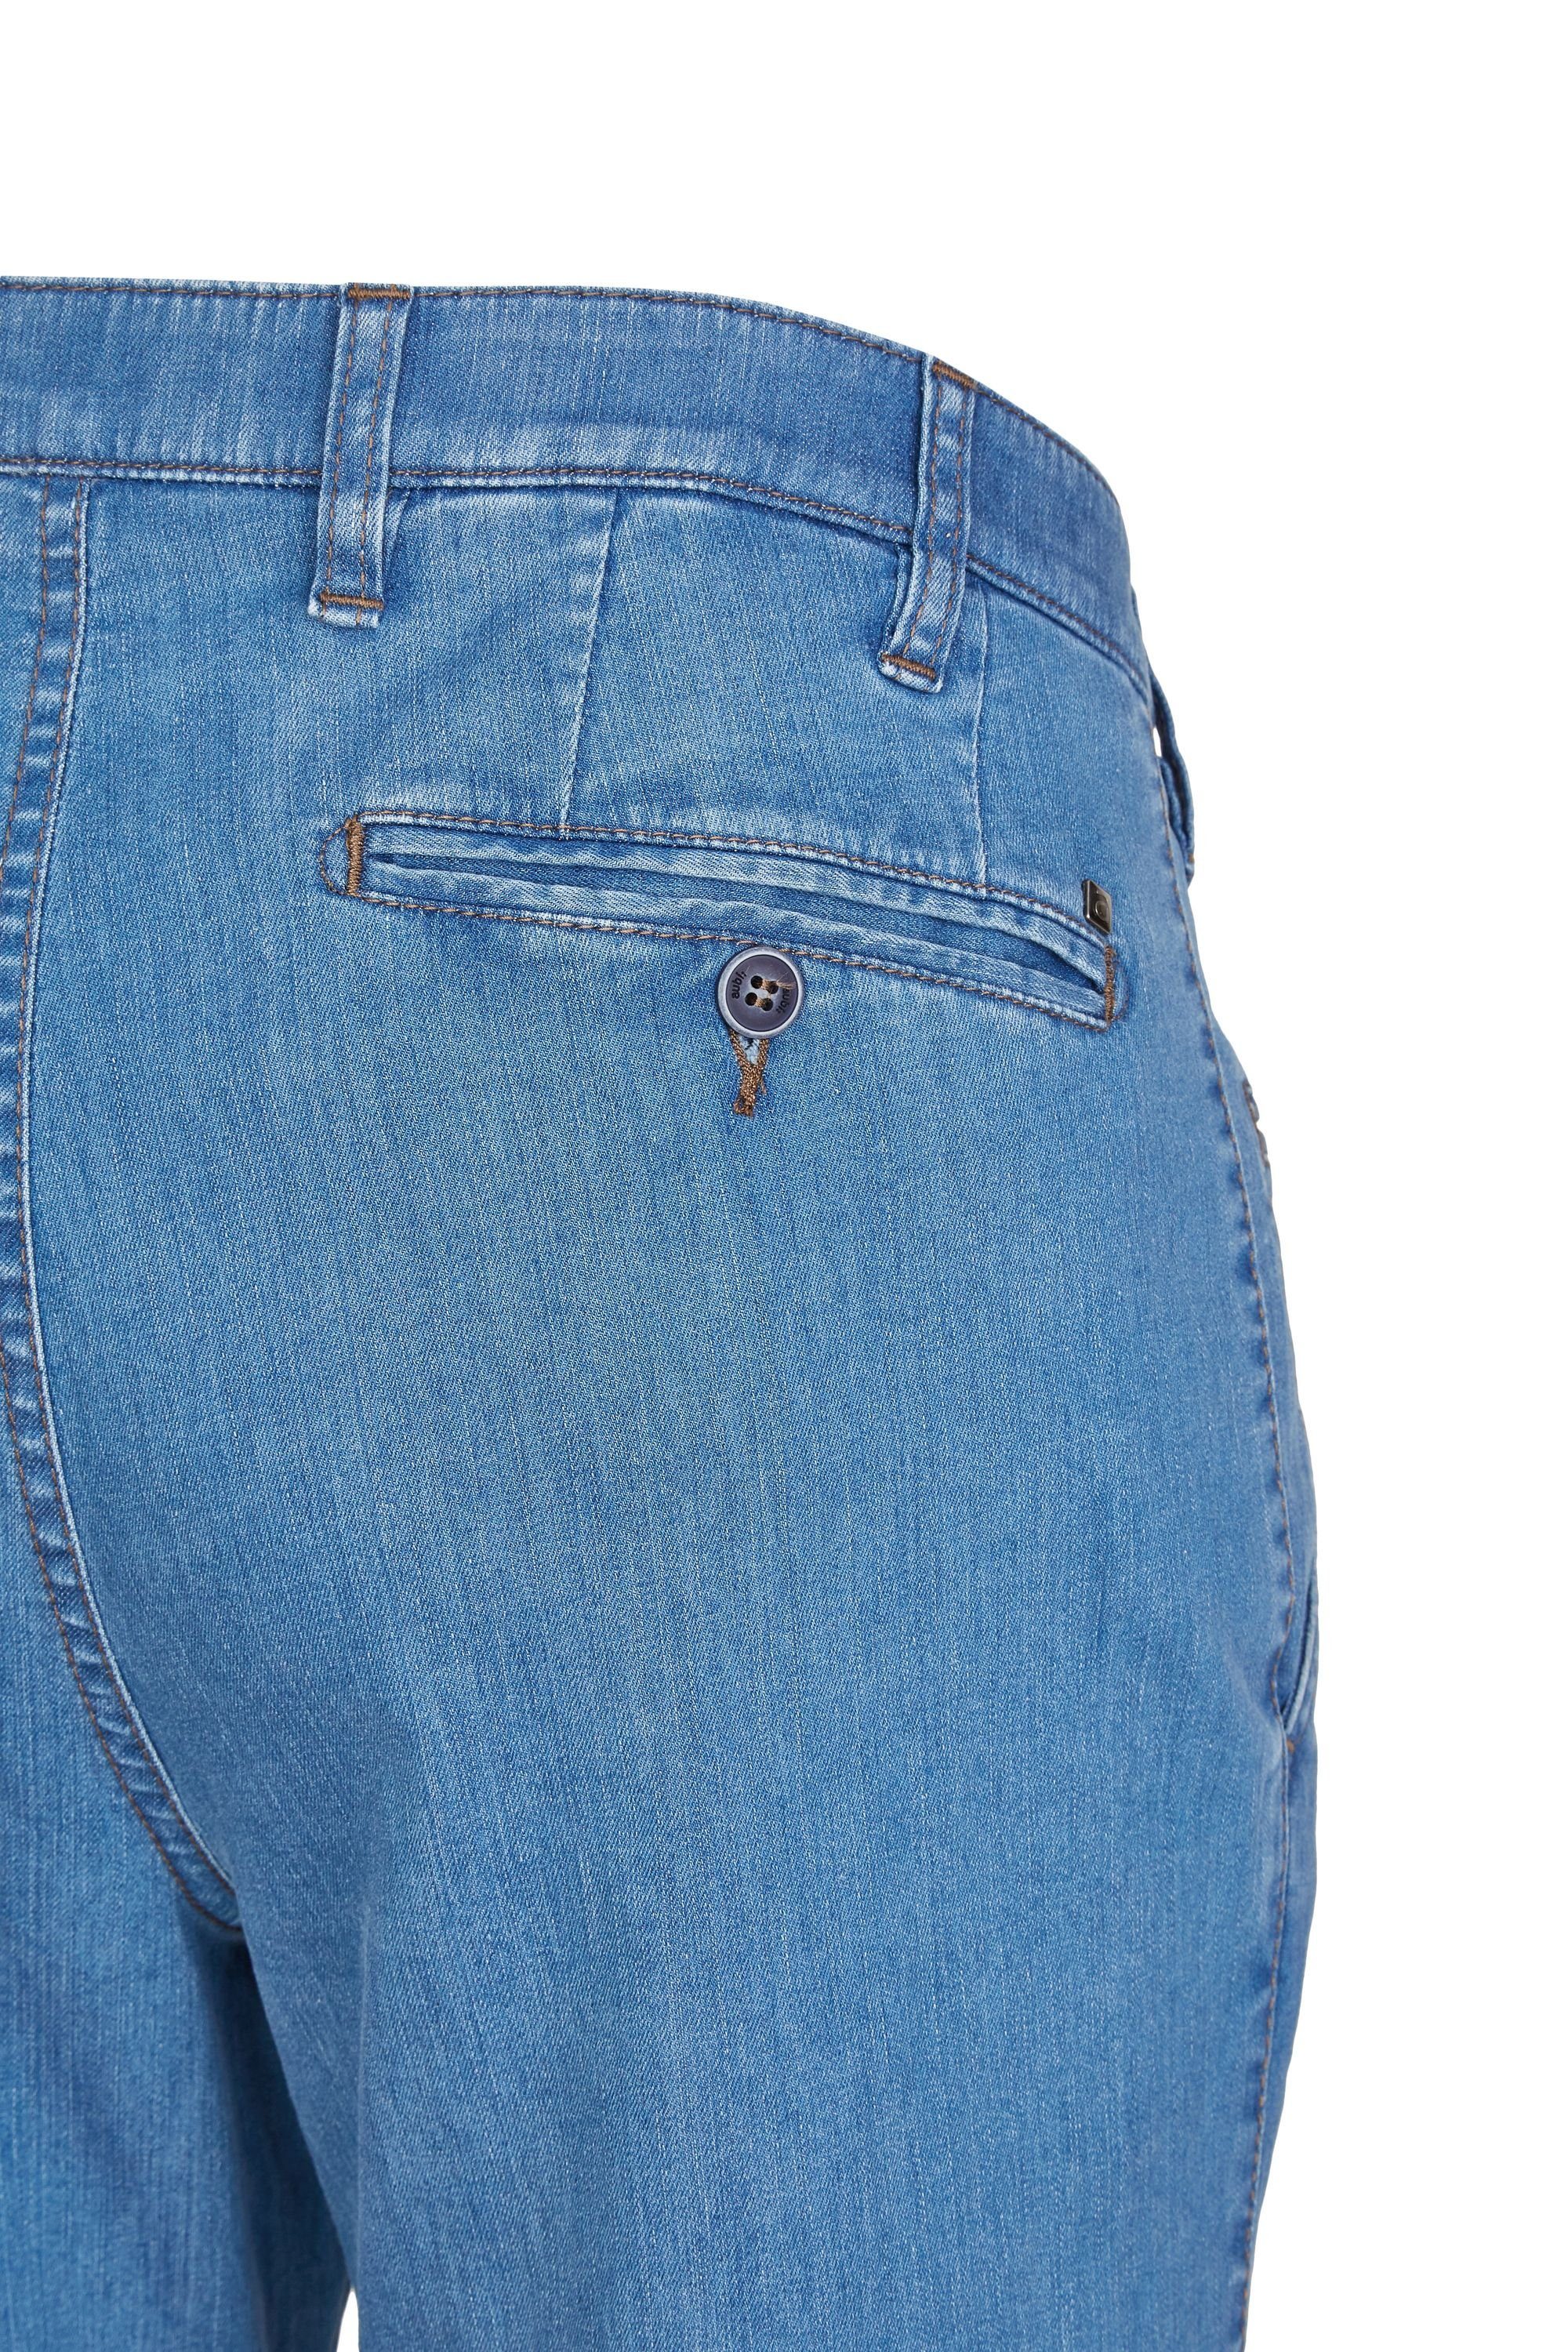 Modell Perfect High Baumwolle Jeans aus Hose Stretch Jeans Herren Fit 526 Flex Bequeme aubi bleached aubi: (43) Sommer